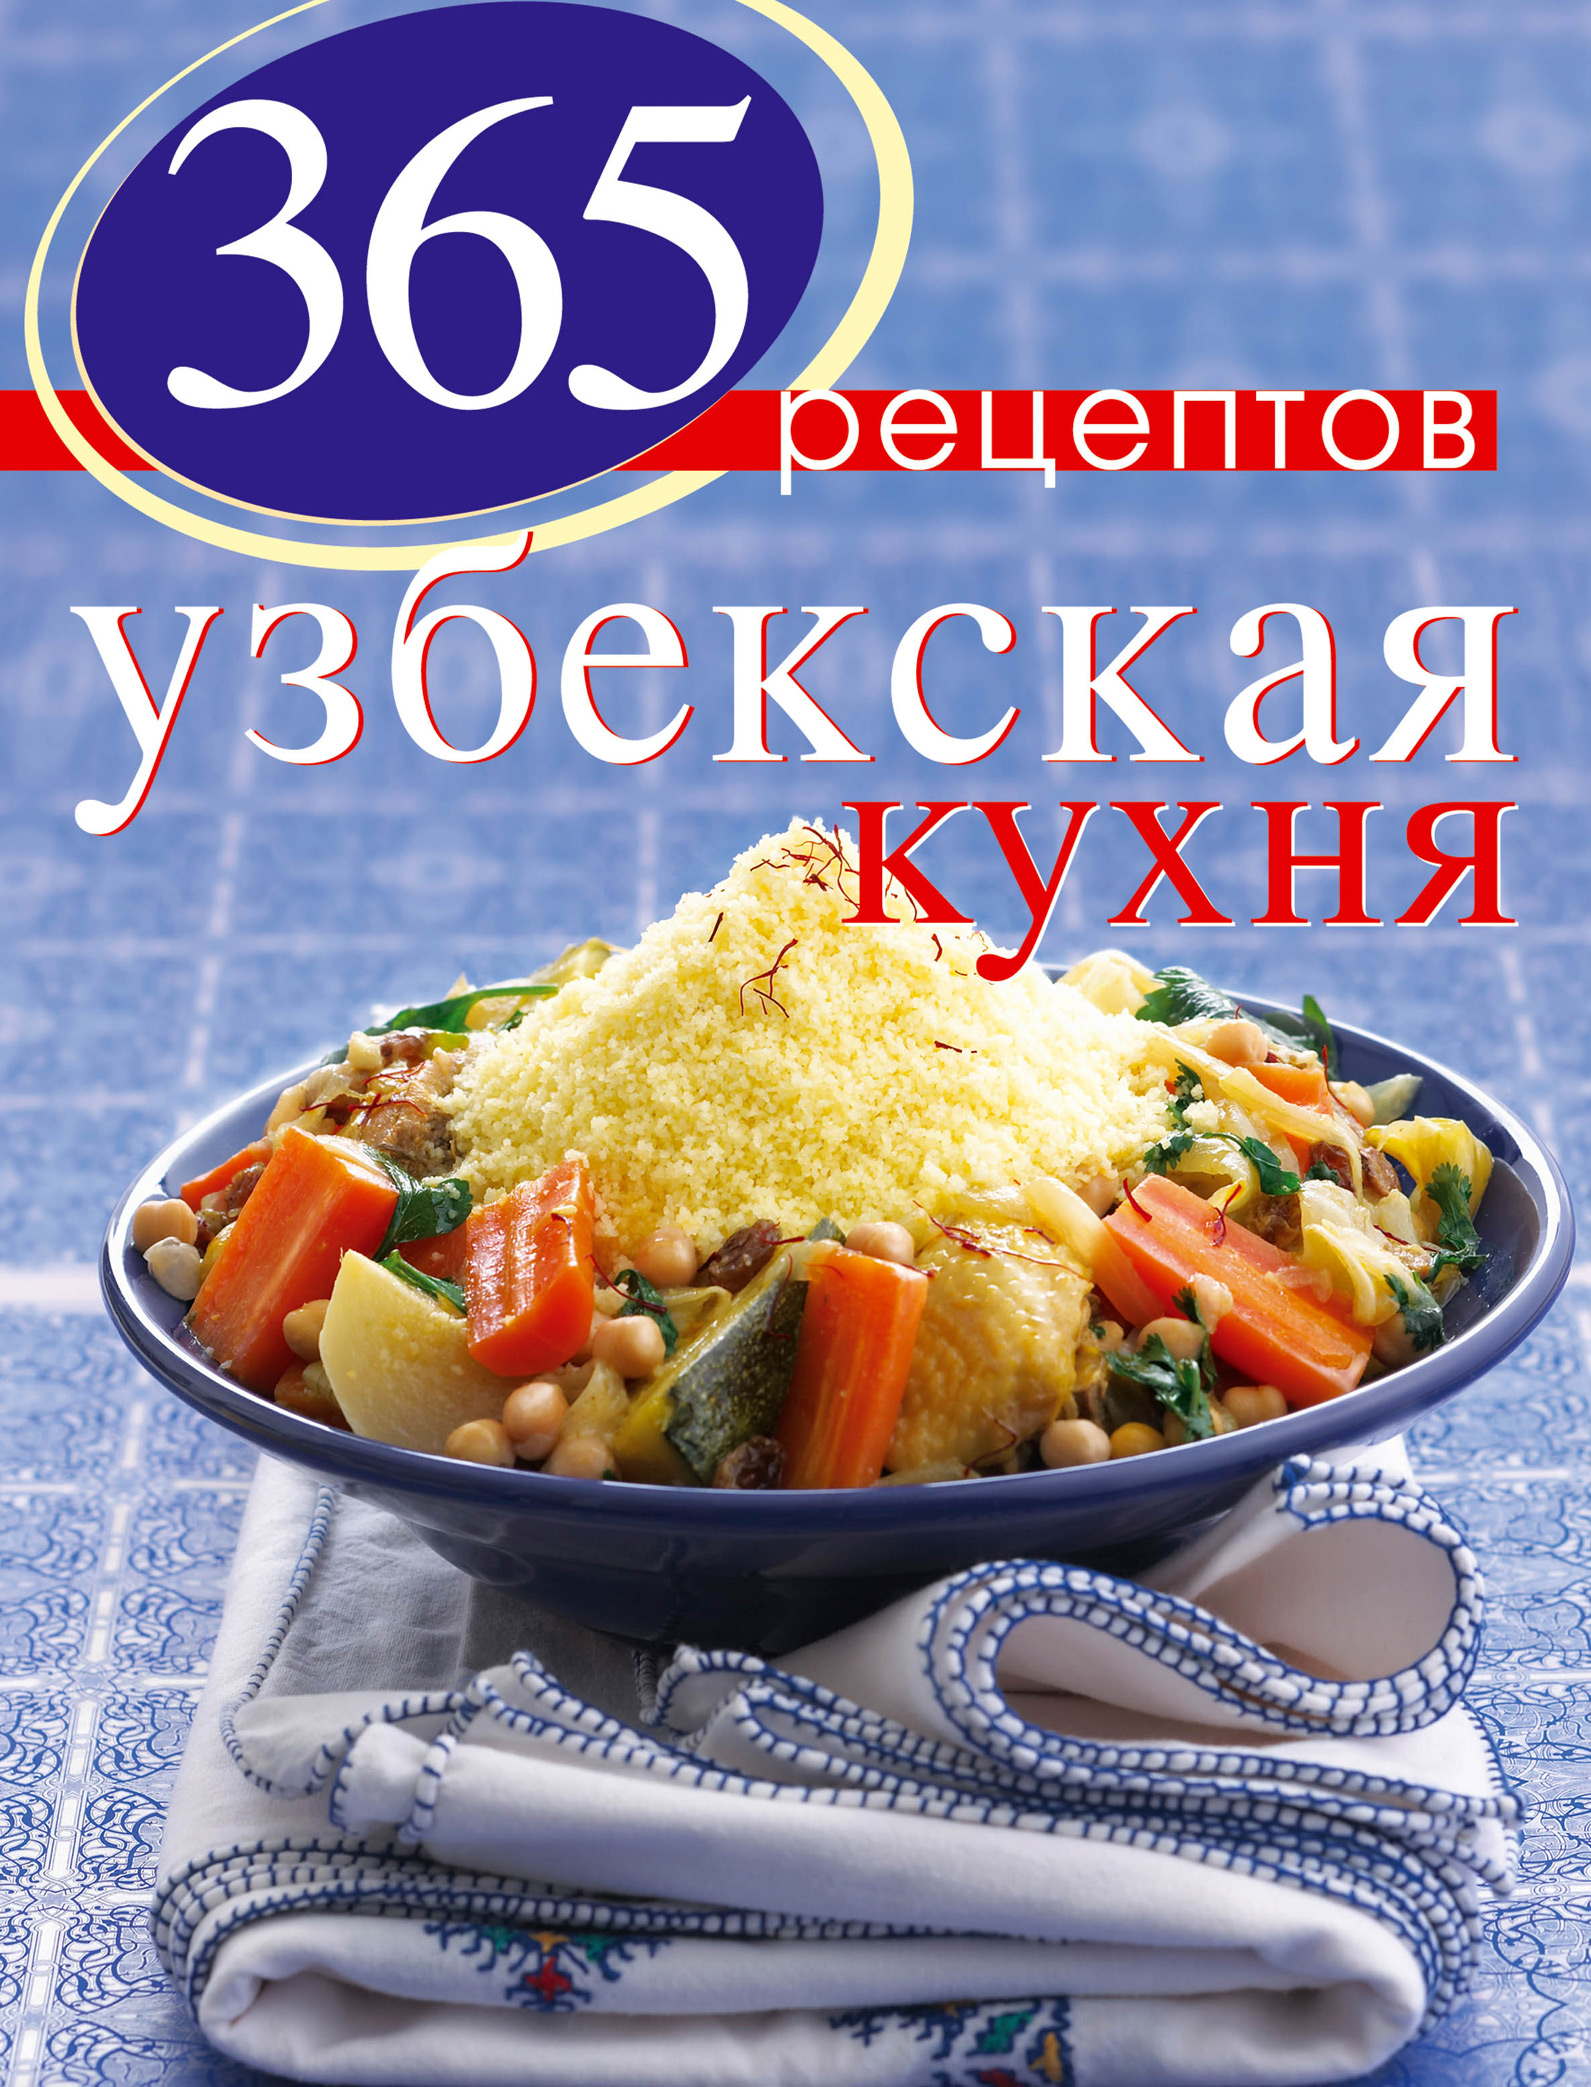 365рецептов узбекской кухни